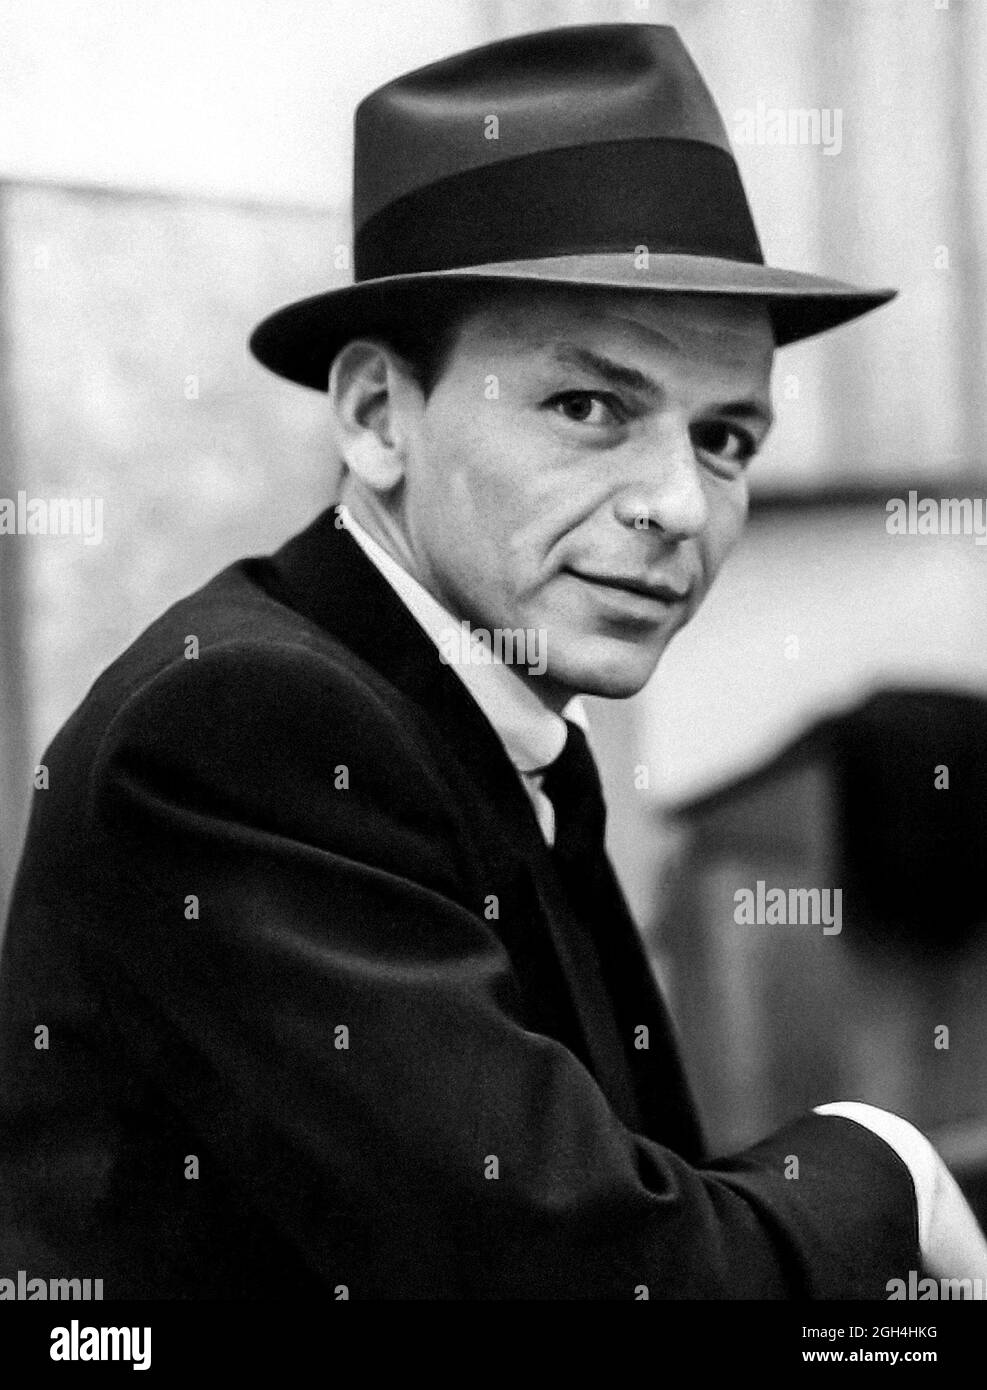 Retrato Fotográfico Vintage - Frank Sinatra Foto de stock